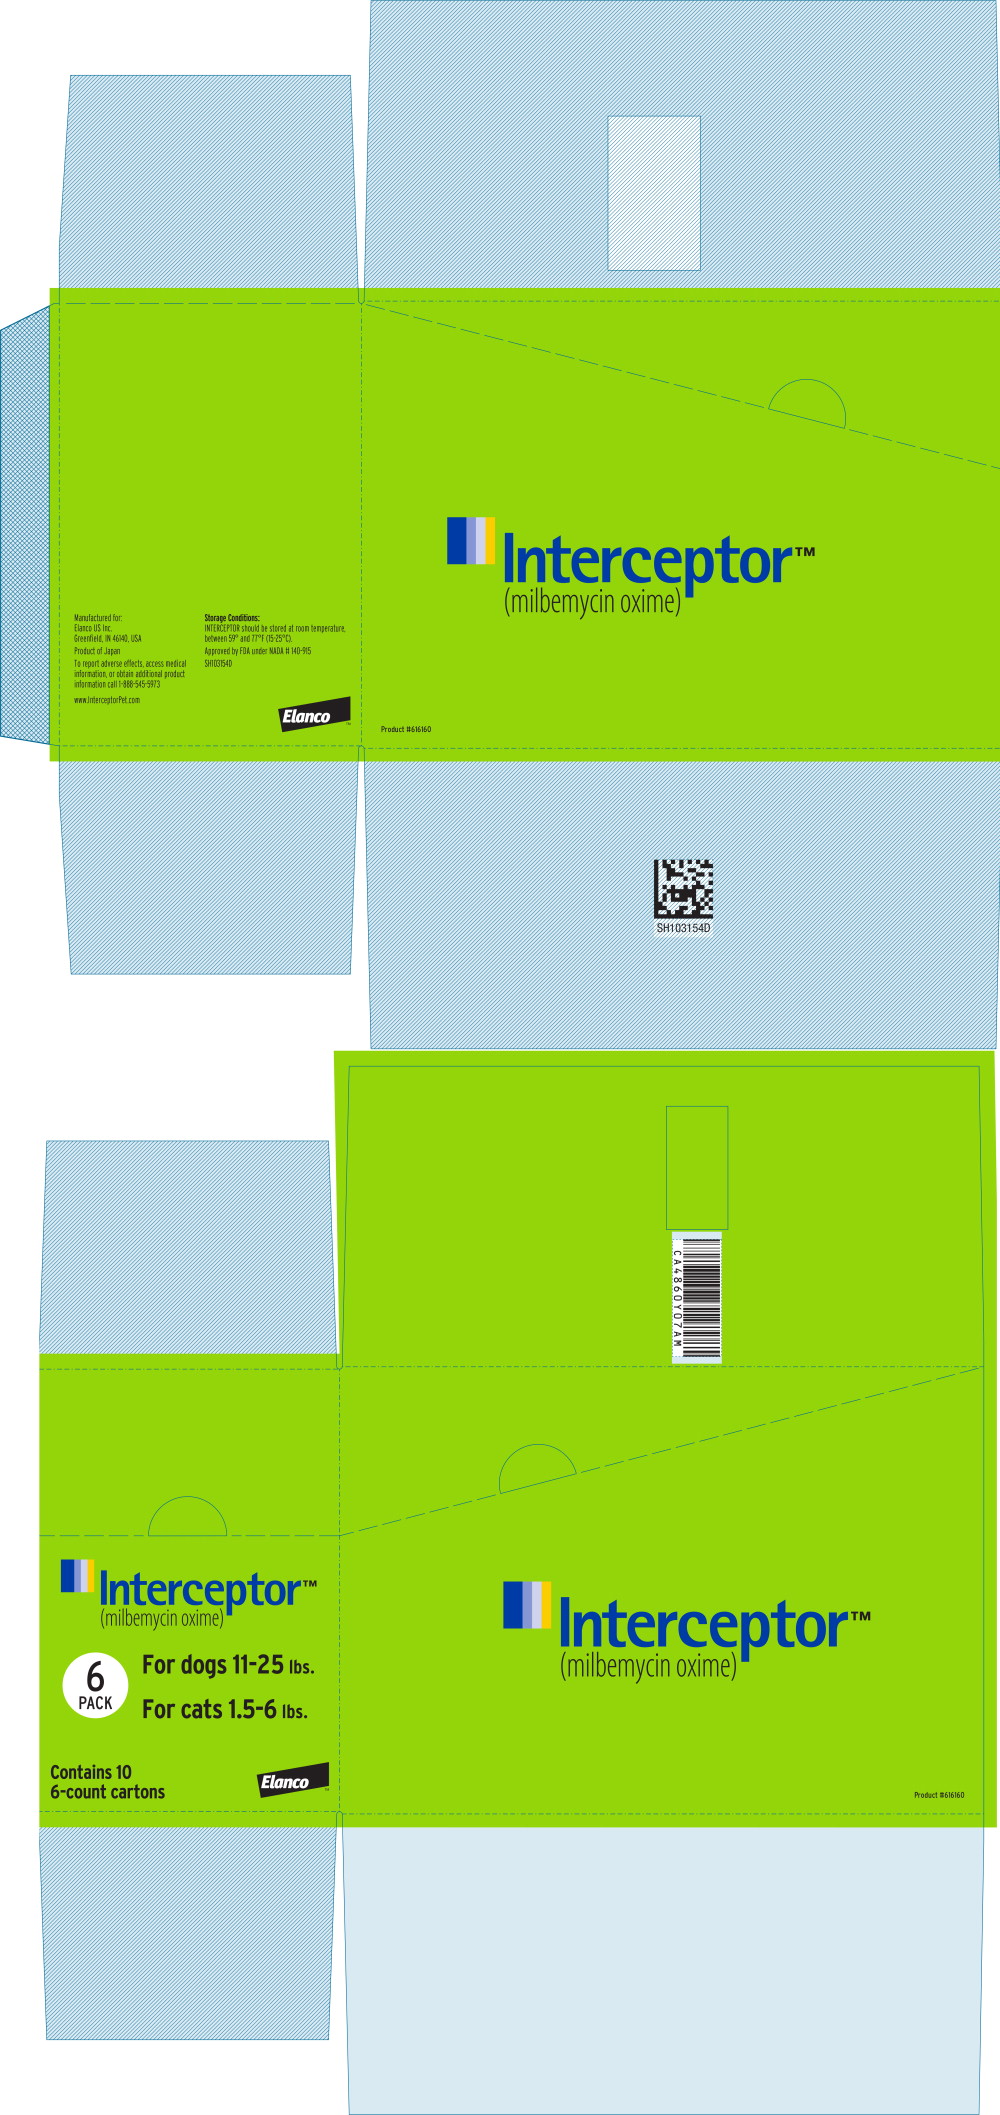 Principal Display Panel - Interceptor 5.75 mg Box Label
